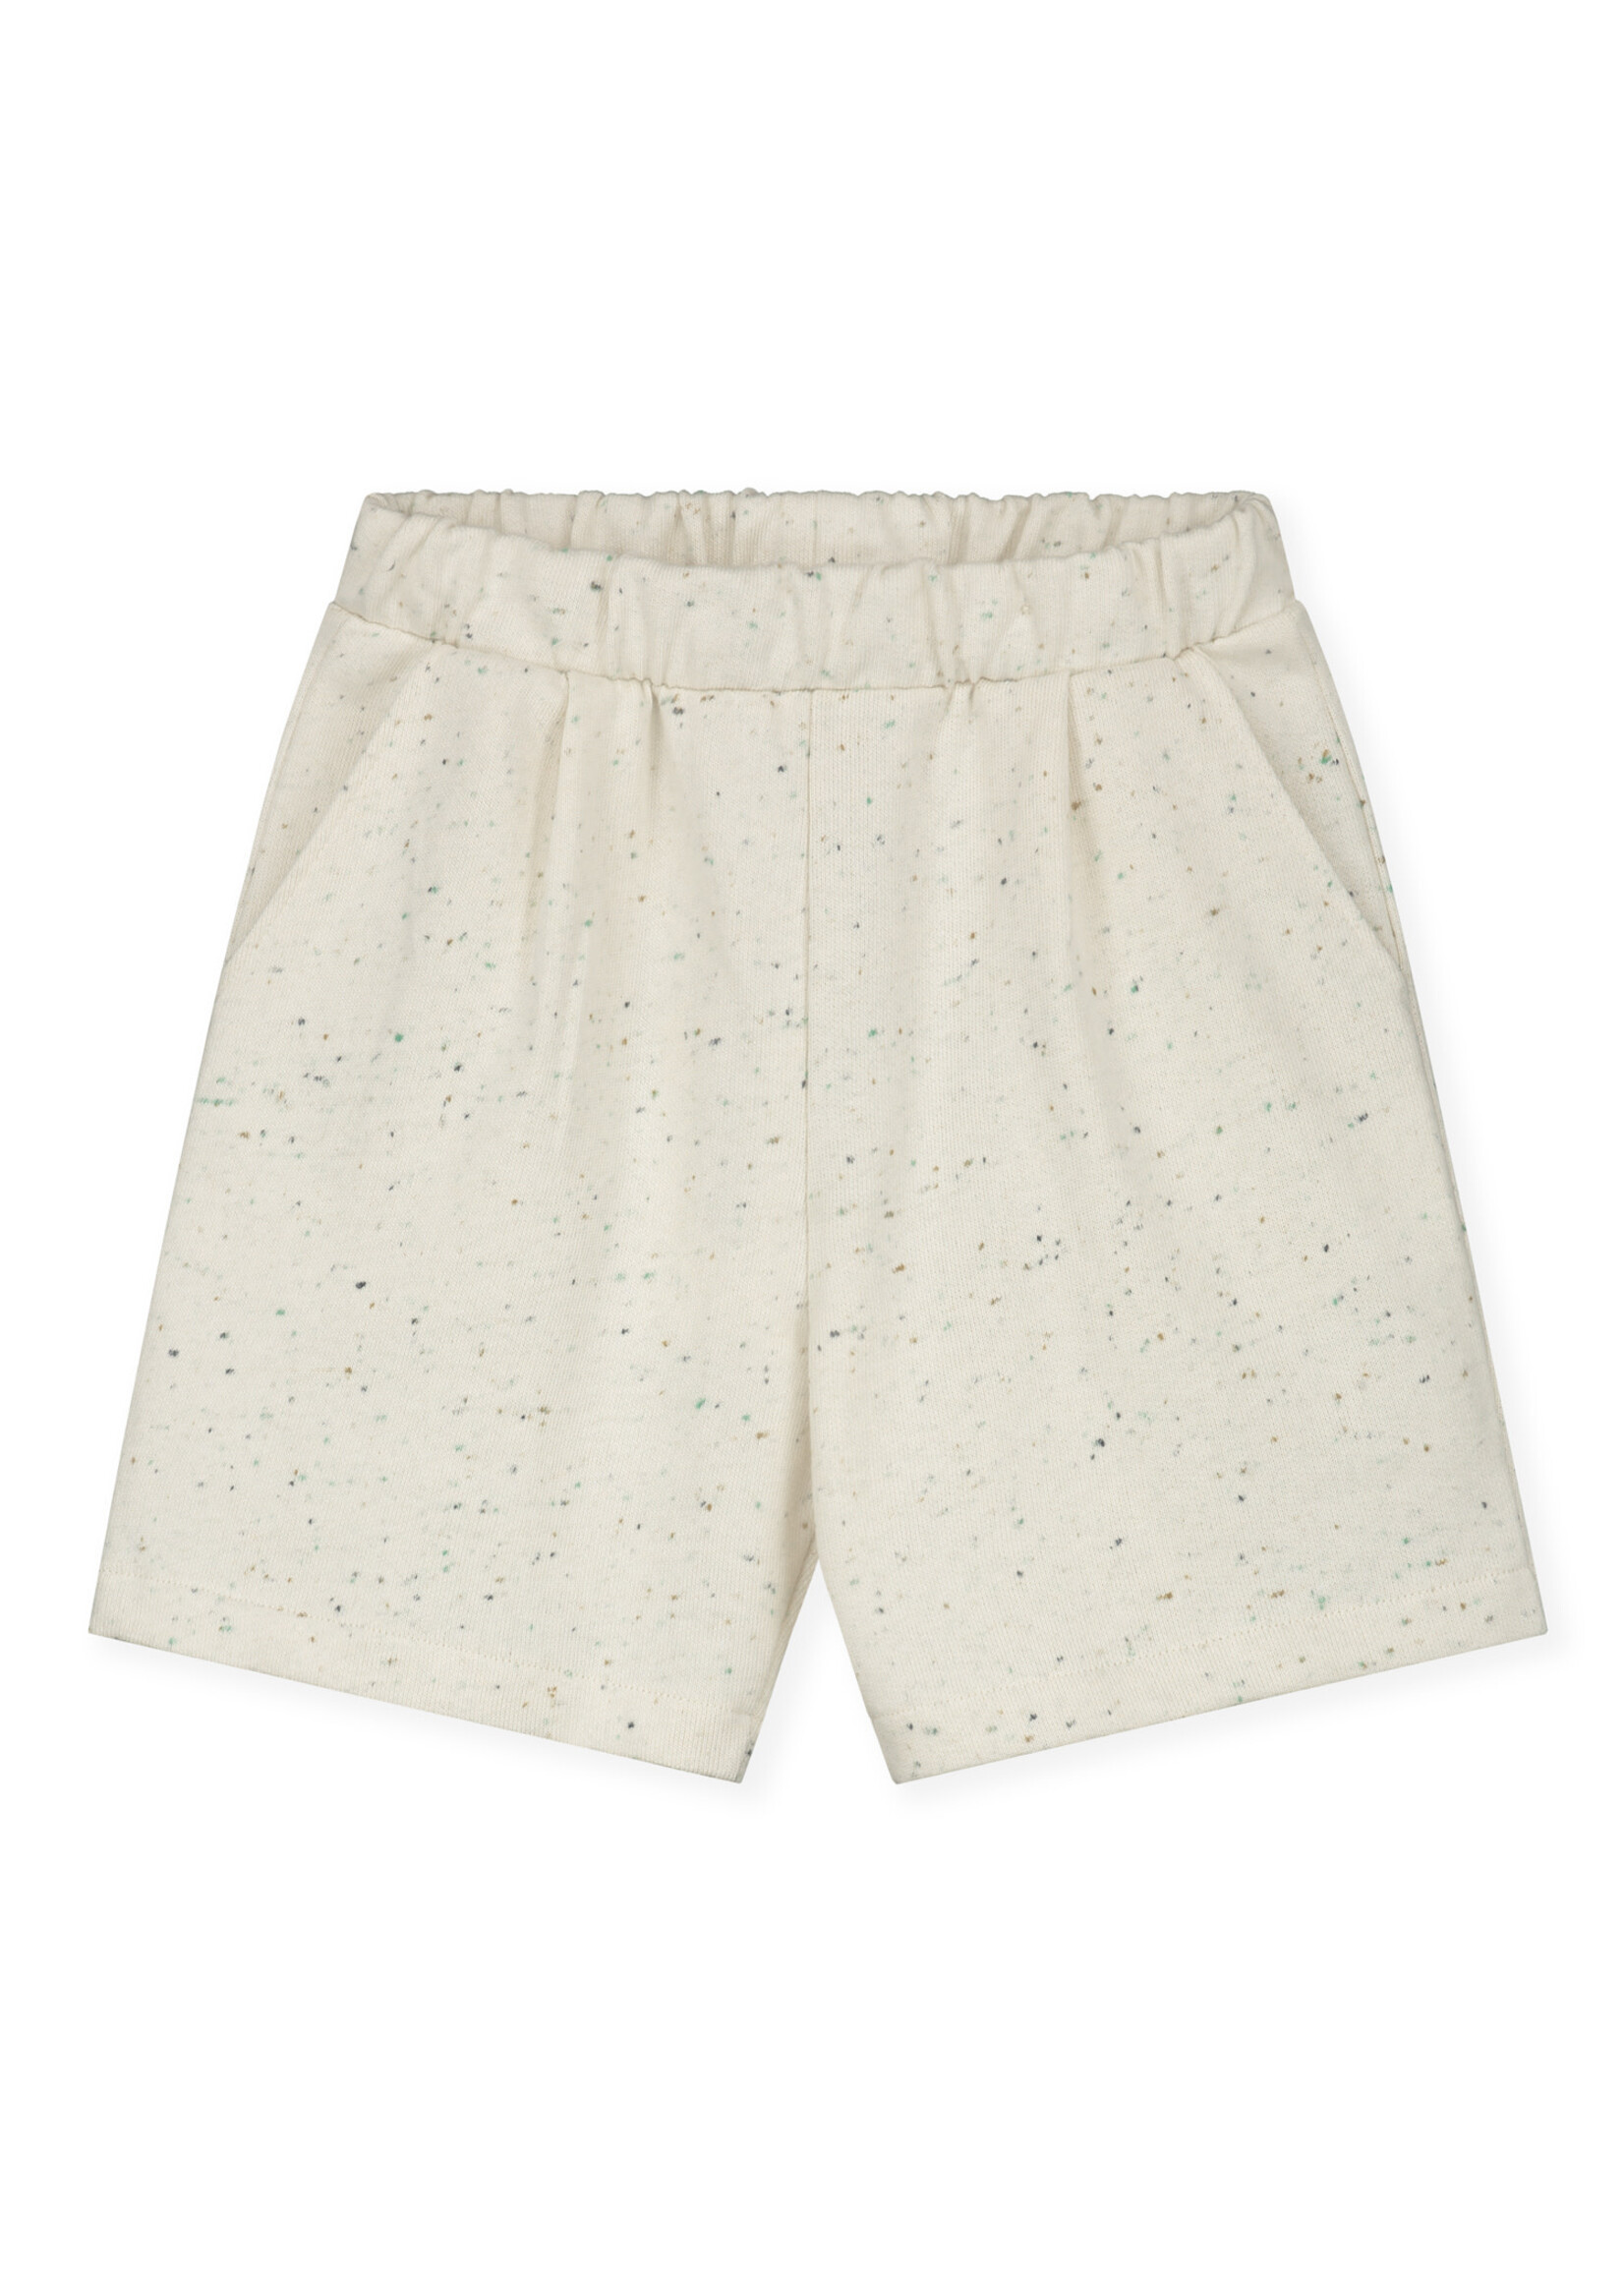 Gray Label Gray Label Bermuda Shorts Sprinkles